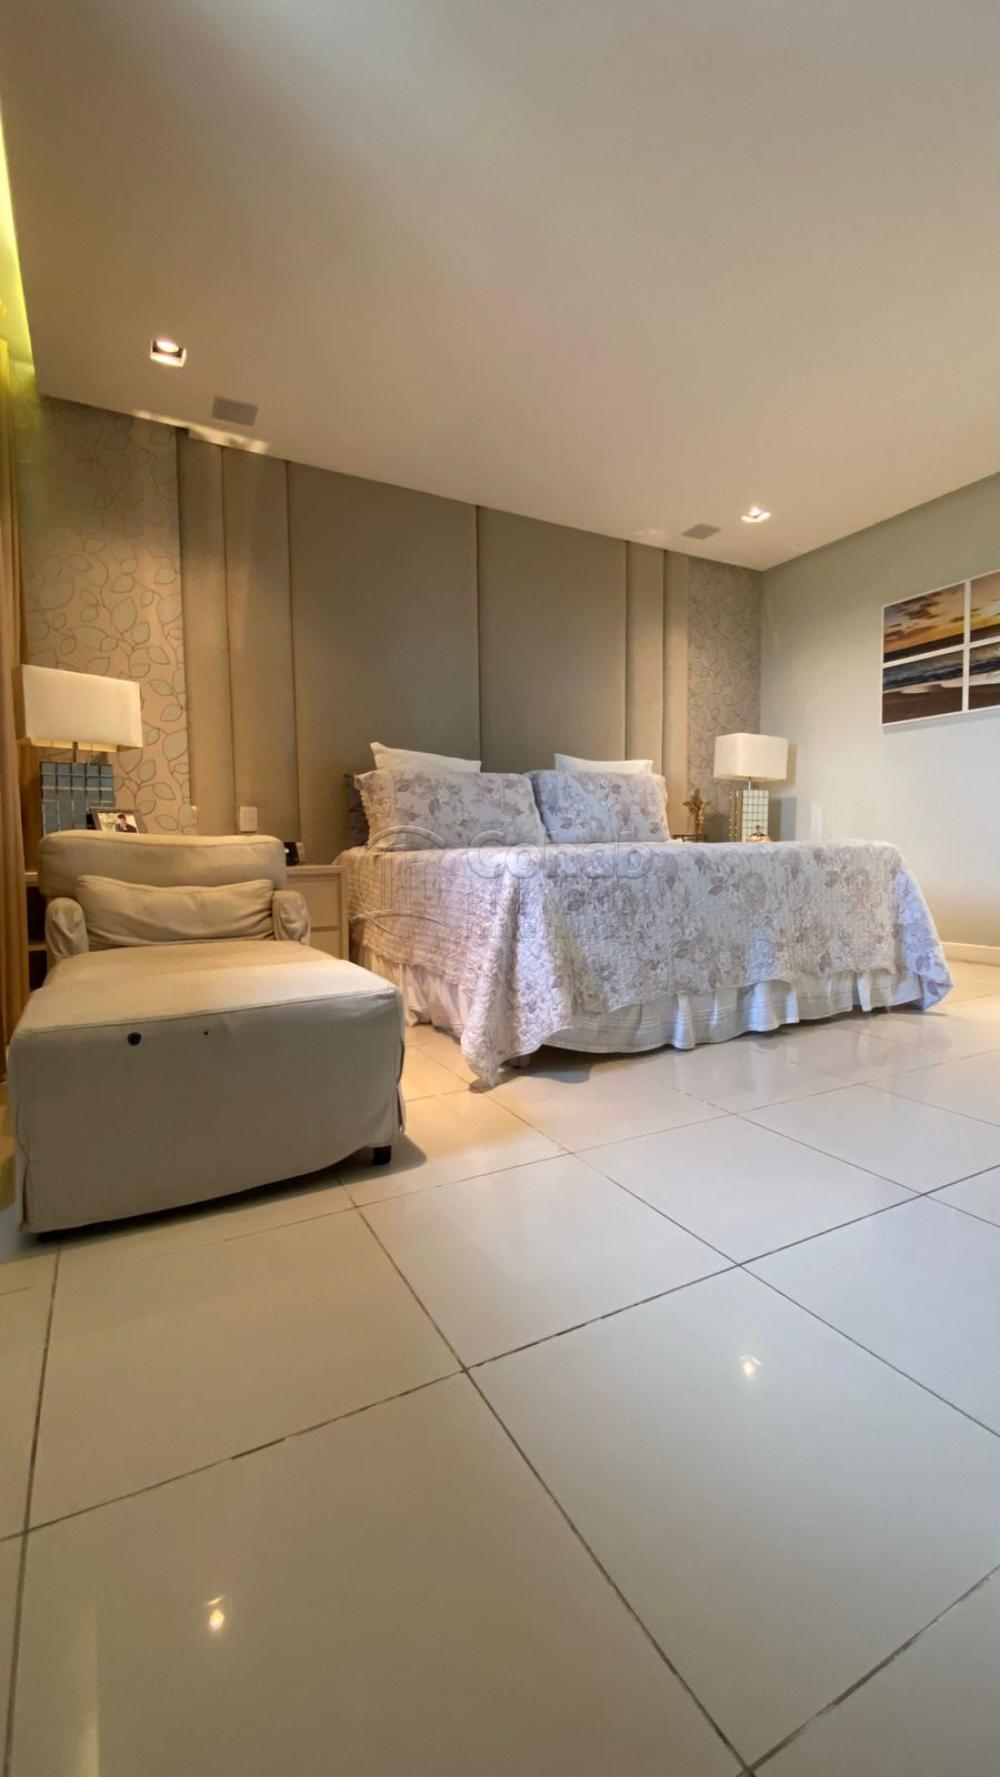 Comprar Apartamento / Padrão em Aracaju R$ 1.800.000,00 - Foto 6